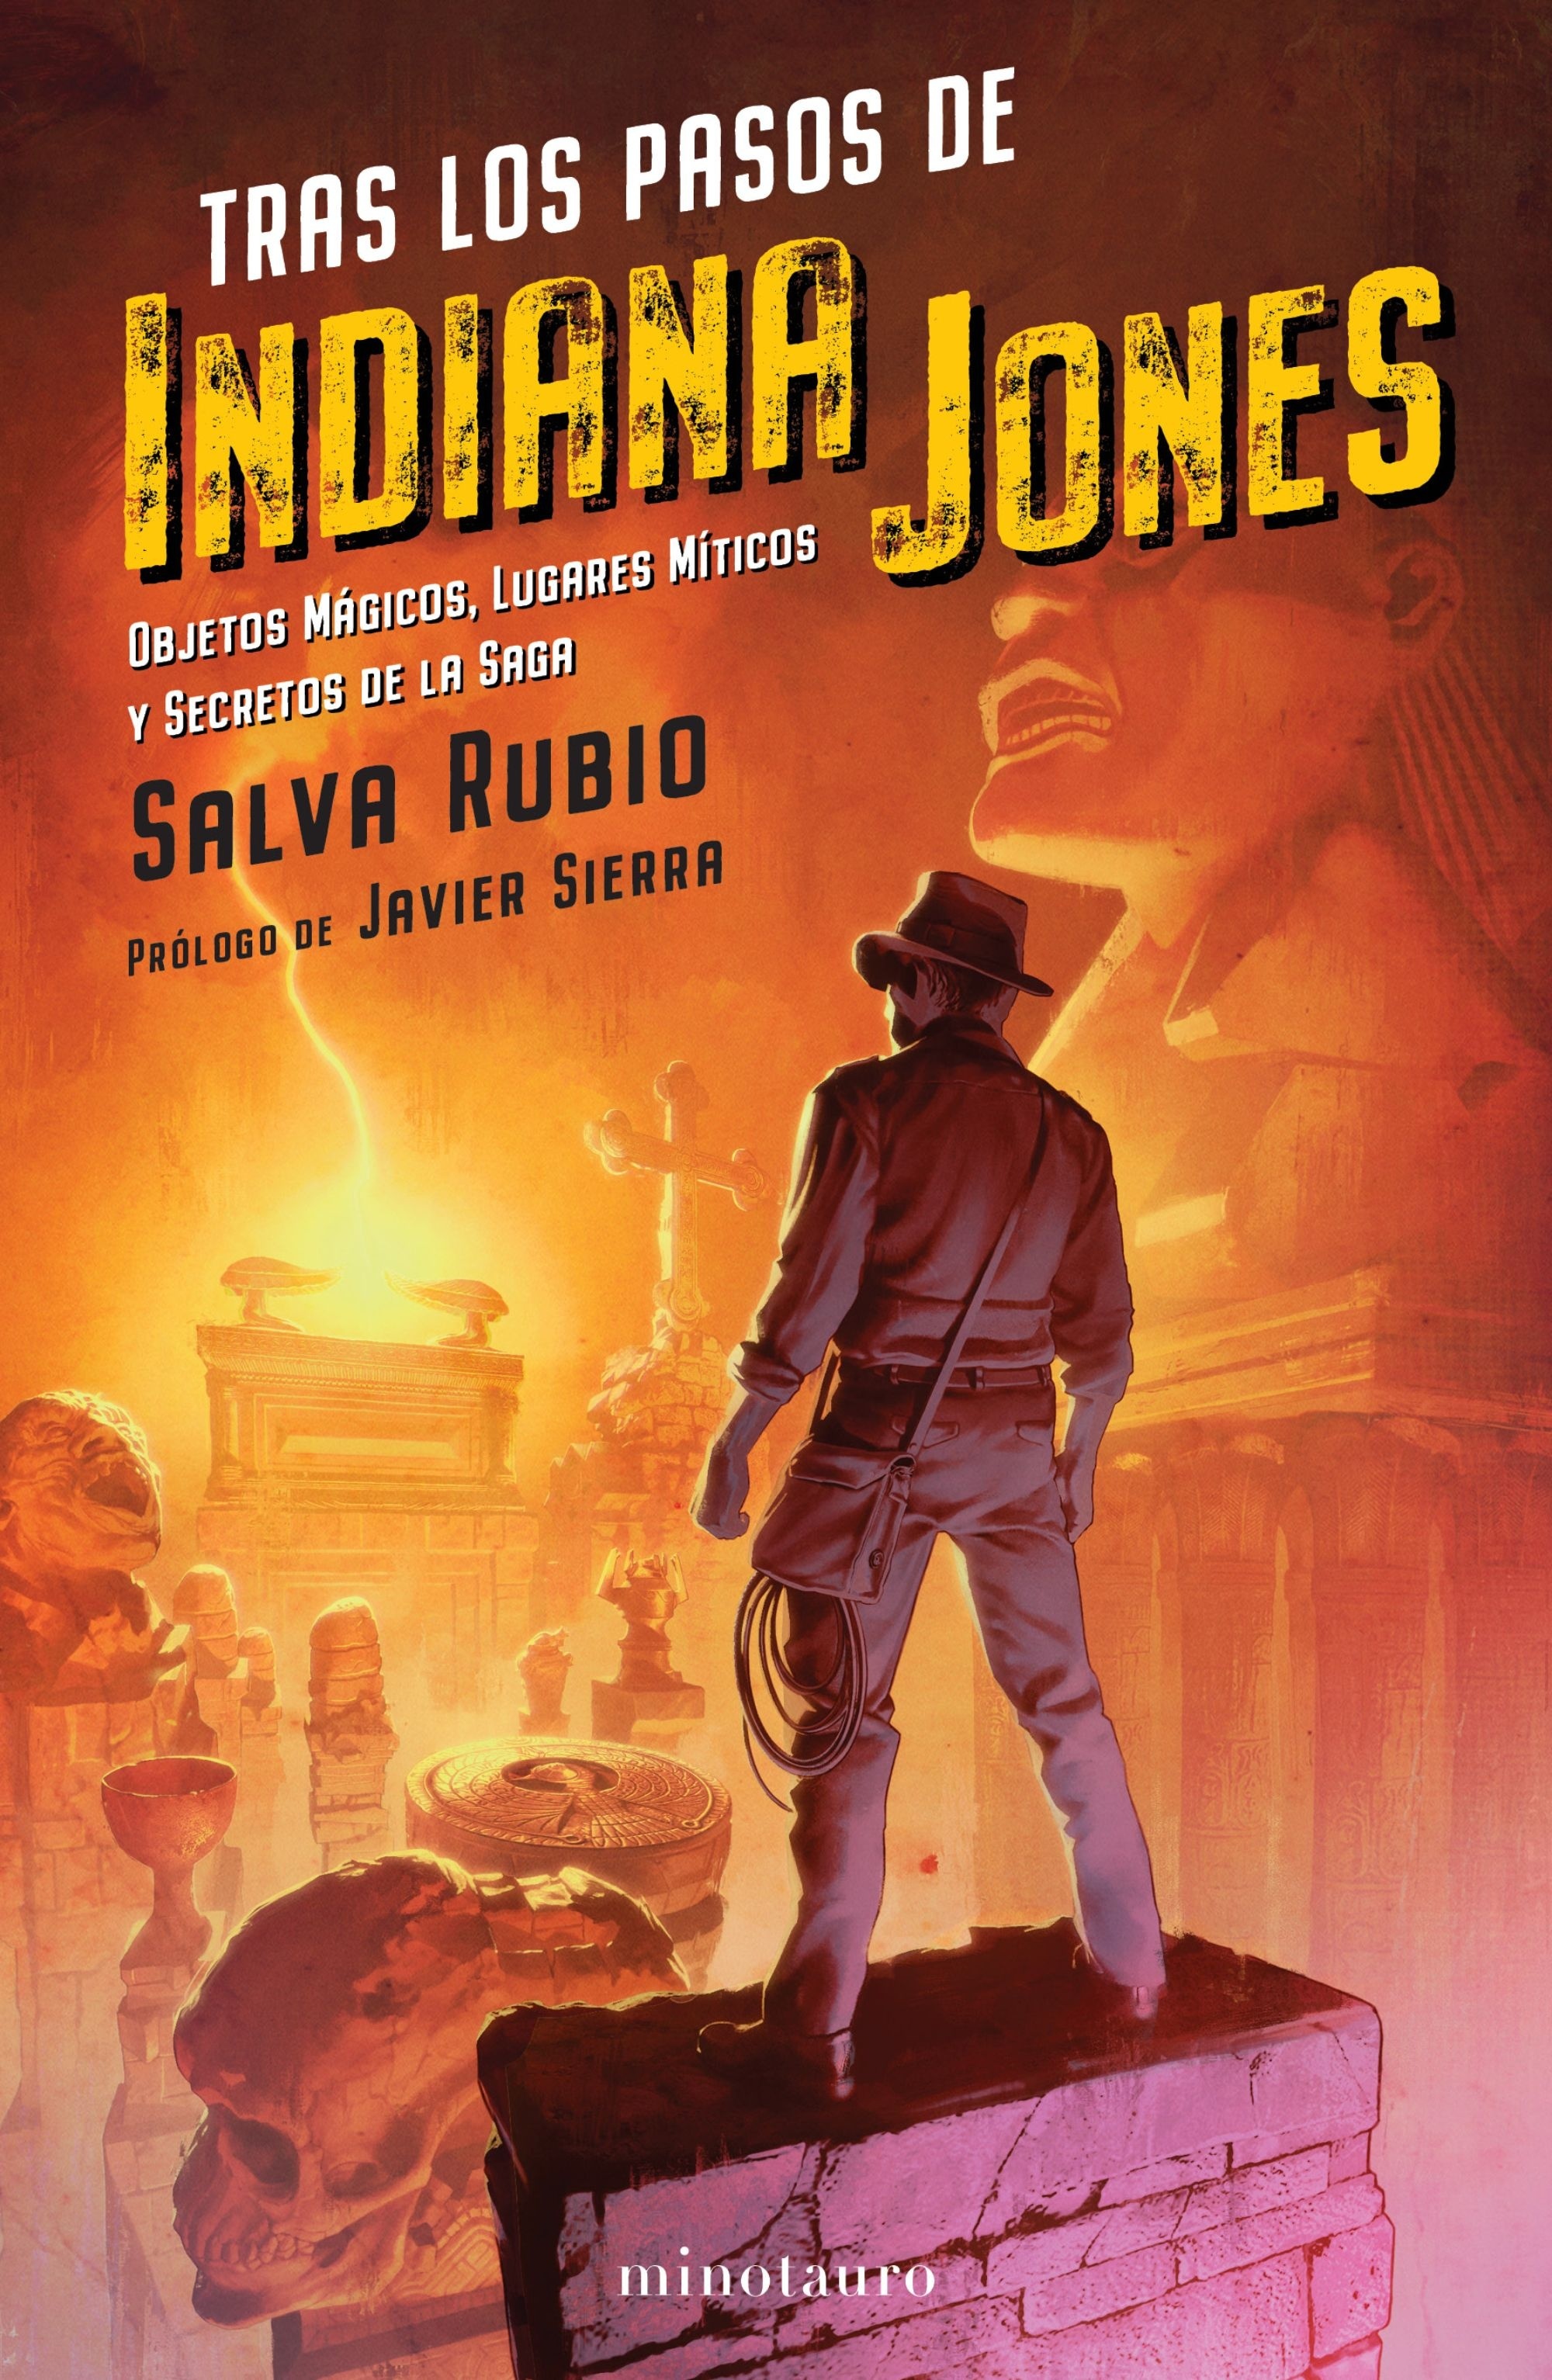 Tras los pasos de Indiana Jones "Objetos mágicos, lugares míticos y secretos de la saga". 